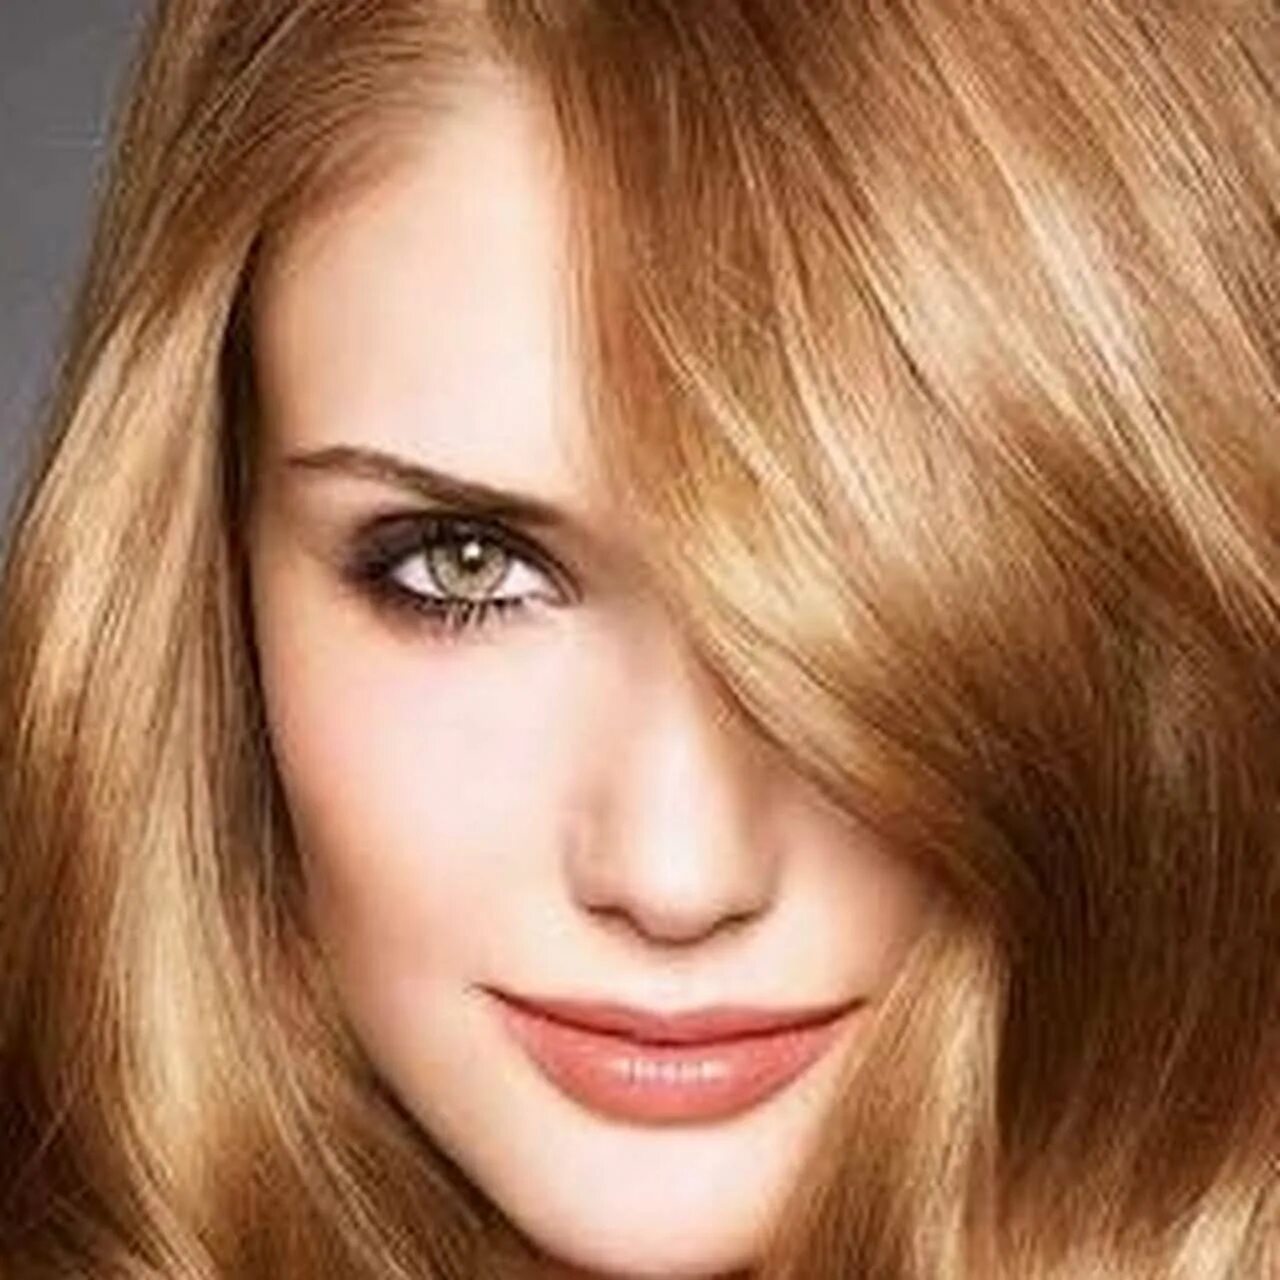 Руссо пшеничный цвет волос. Лореаль клубничный блонд. Лореаль медовый блонд. Золотистый цвет волос.